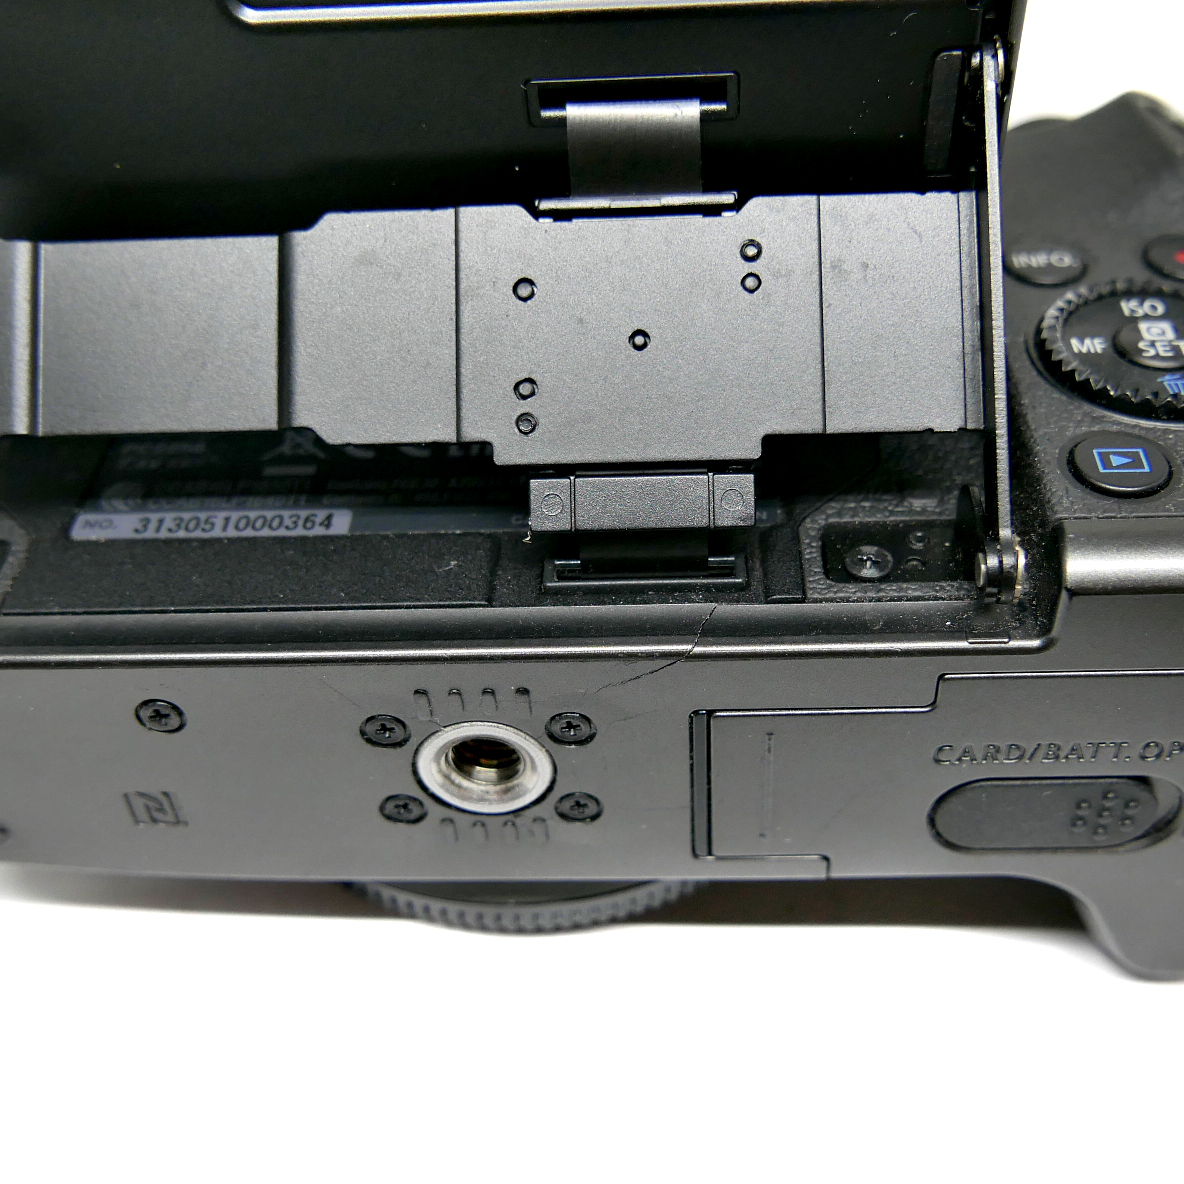 (Myyty) Canon EOS M5 -runko (Käytetty)